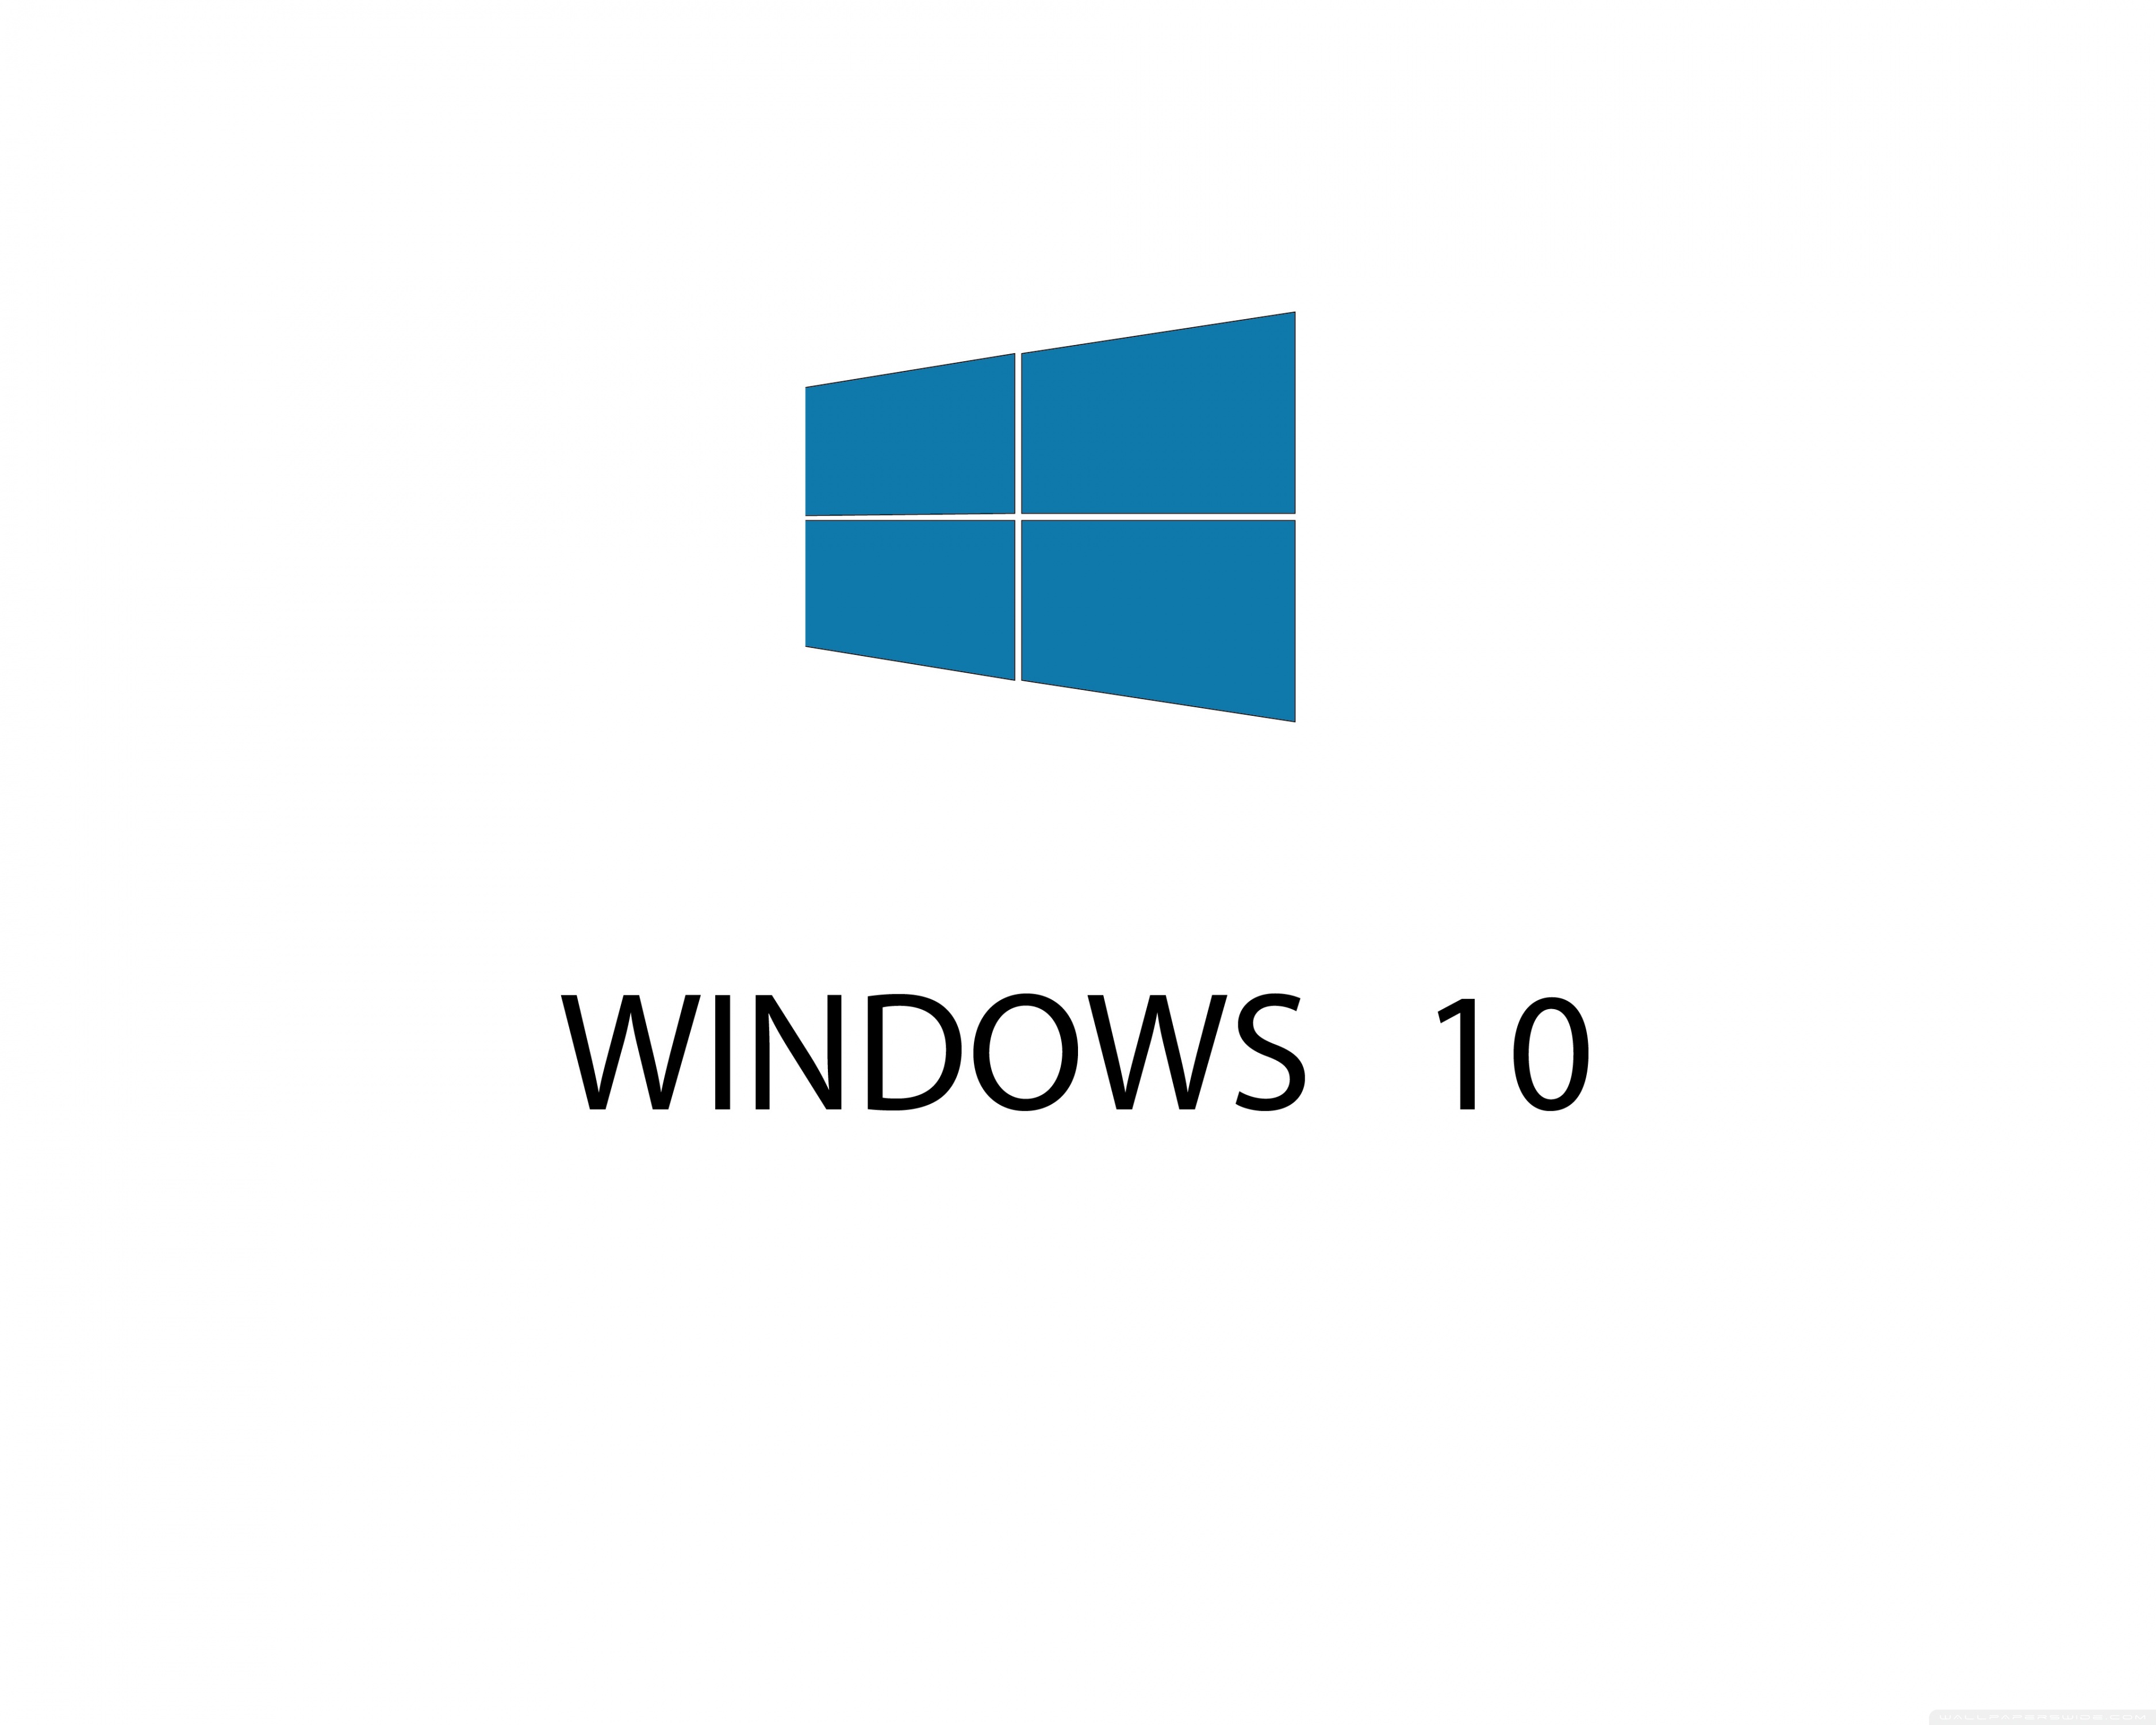 WINDOWS 10 Ultra HD Desktop Background Wallpaper for : Widescreen ...